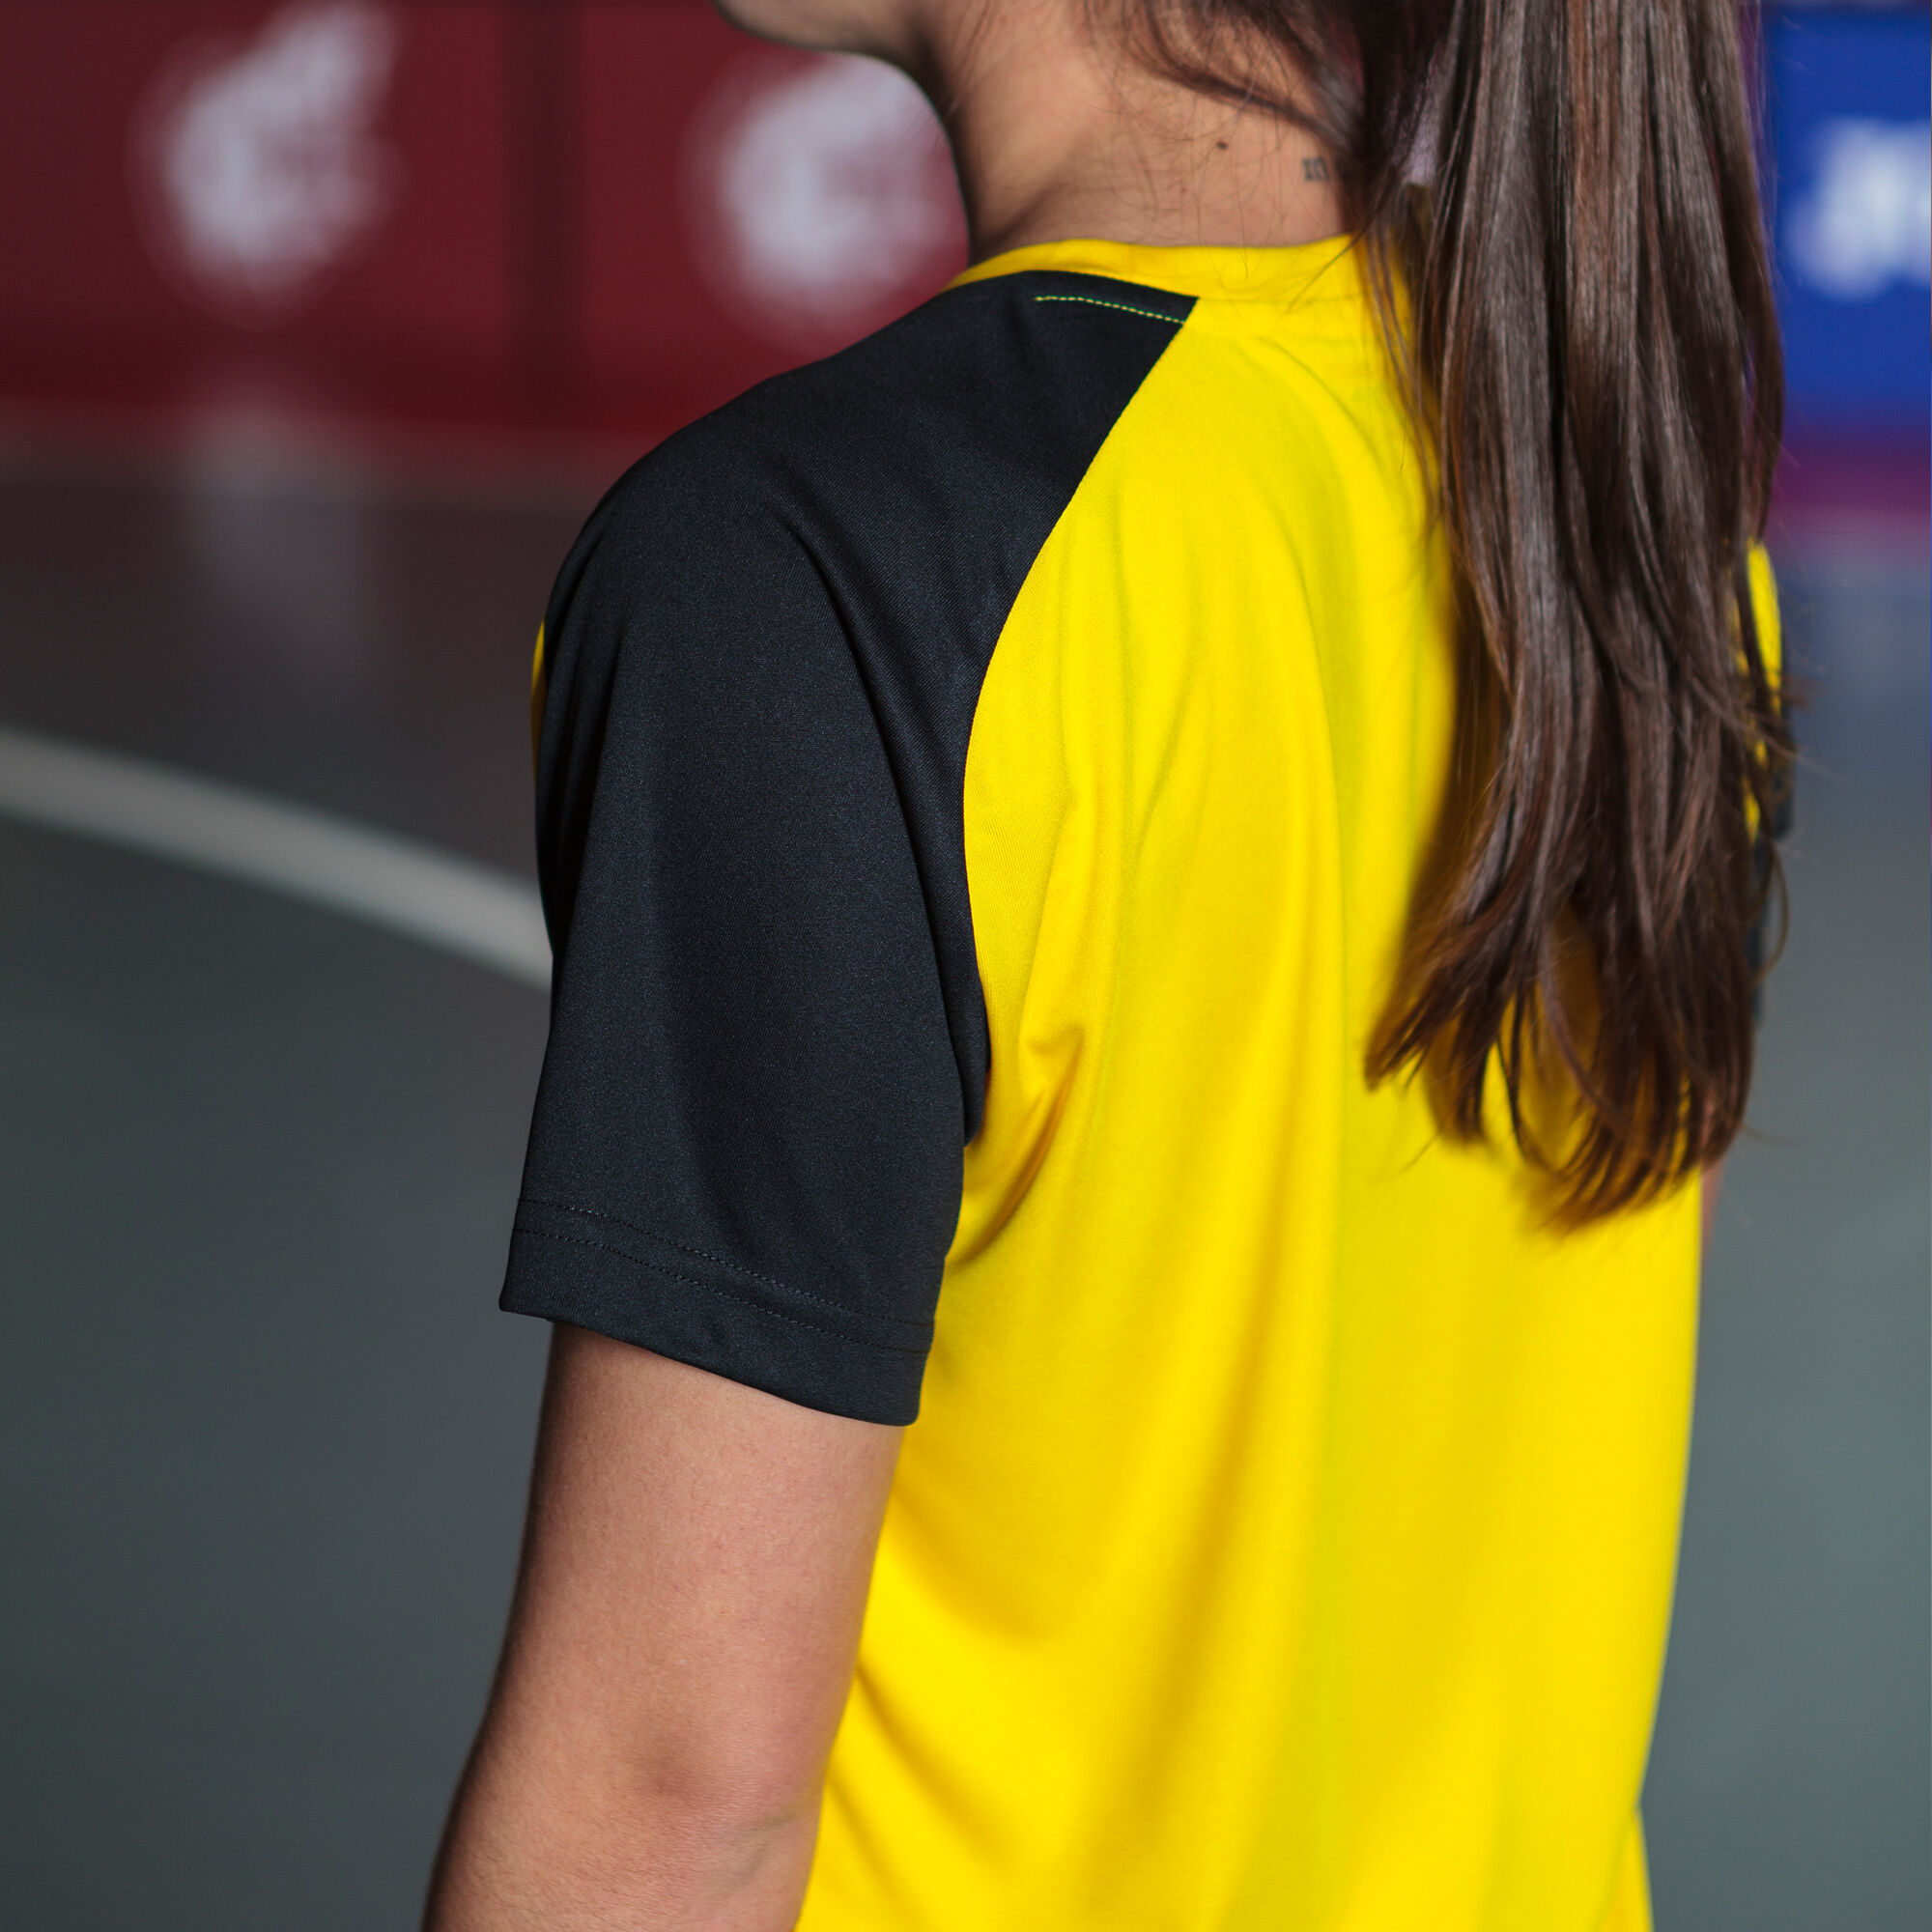 Camiseta manga corta mujer Academy IV amarillo negro